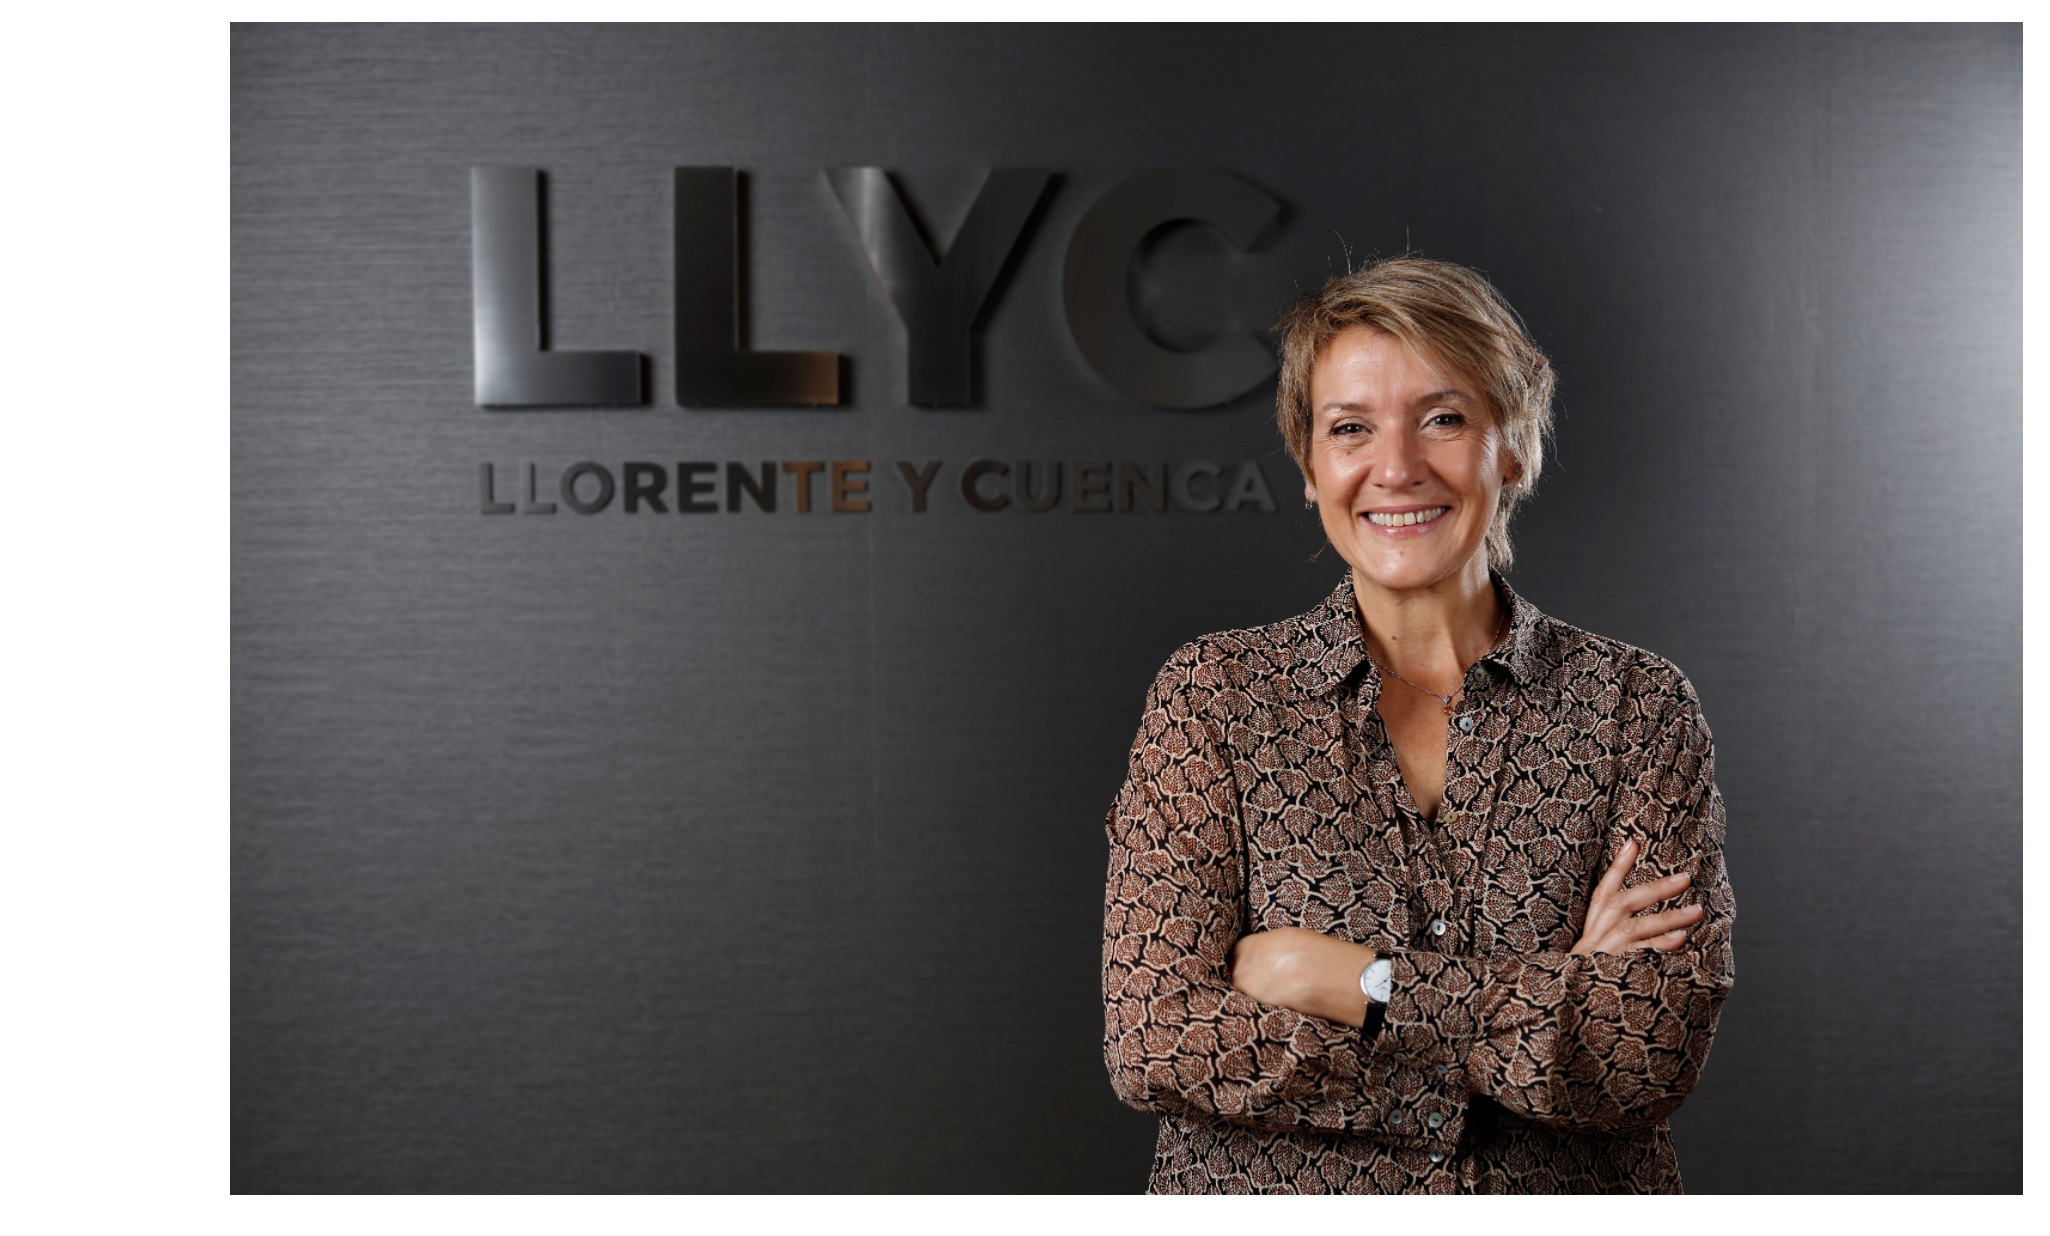 LLYC ,incorpora ,Silvia Bajo , ex directora corporativa , marca , Caixabank, Senior Advisor , España, programapublicidad